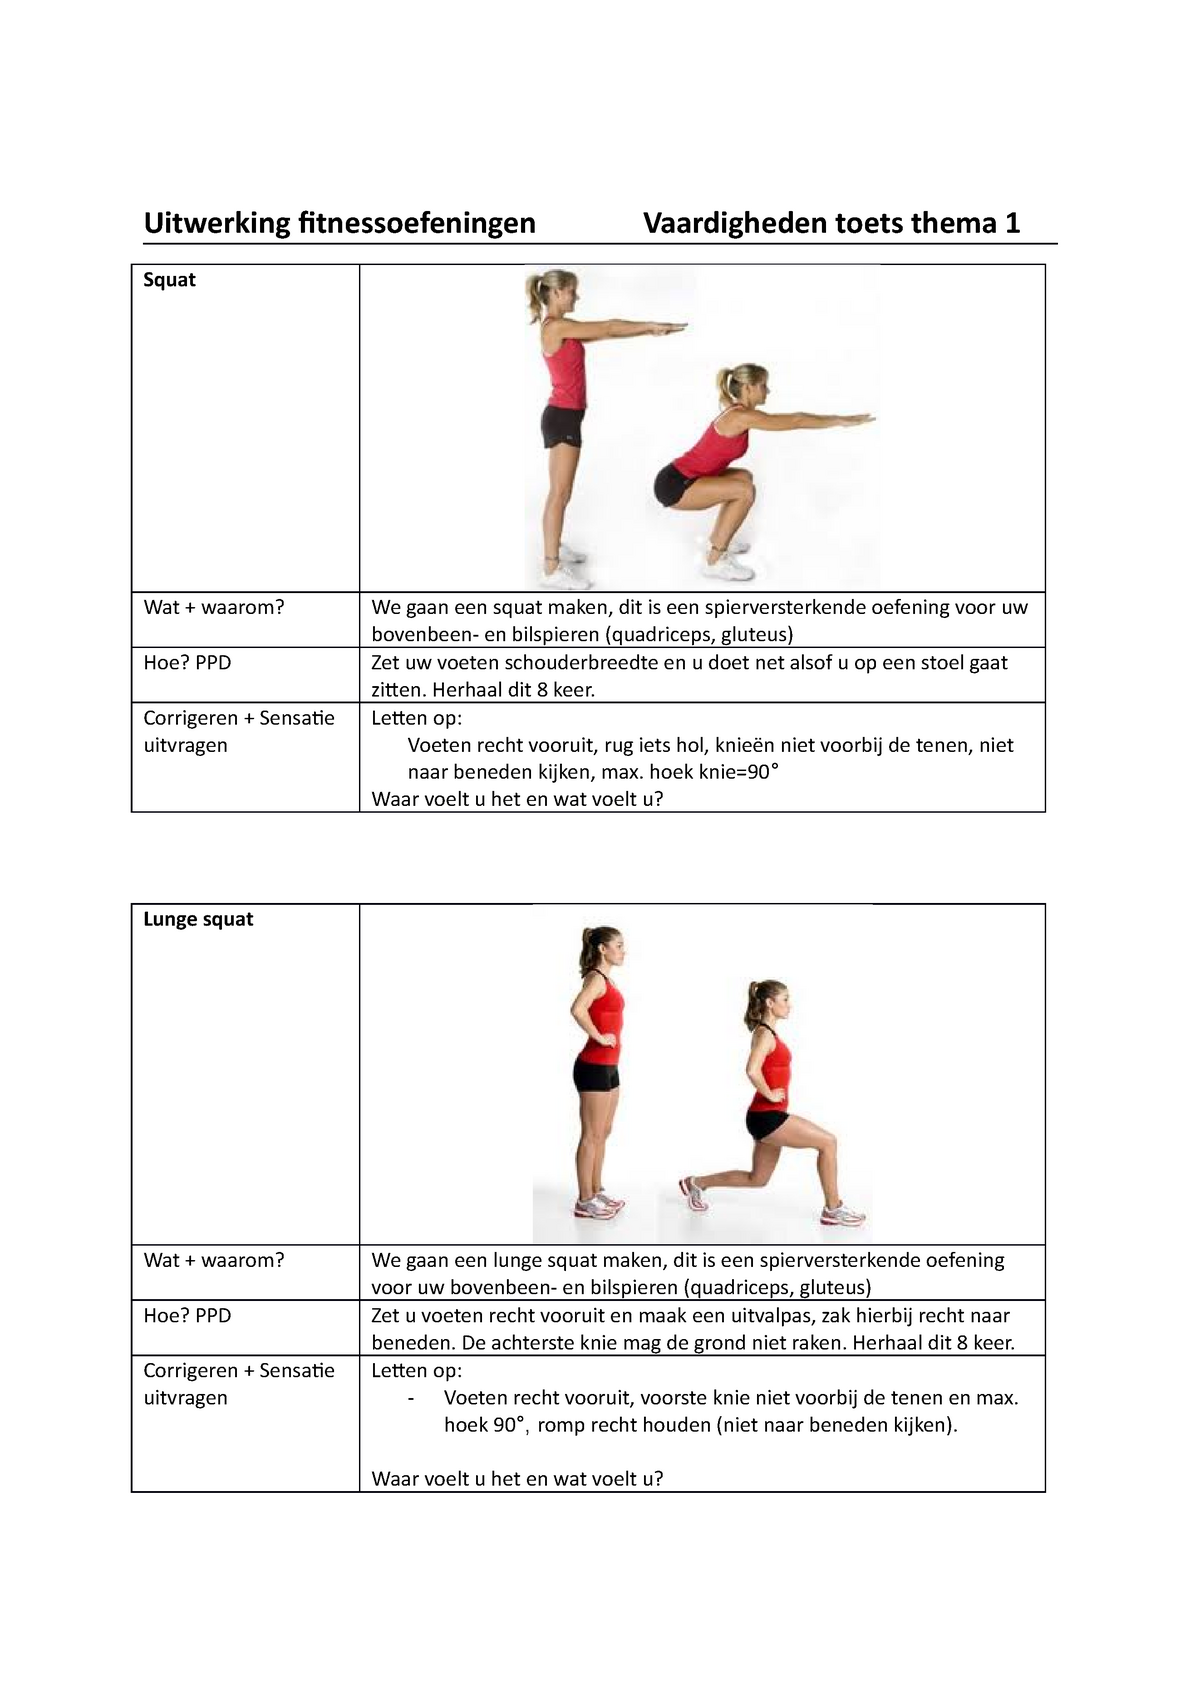 moe Konijn test Uitwerking fitnessoefeningen Vaardigheden toets thema 1 volledig -  Uitwerking fitnessoefeningen - Studeersnel